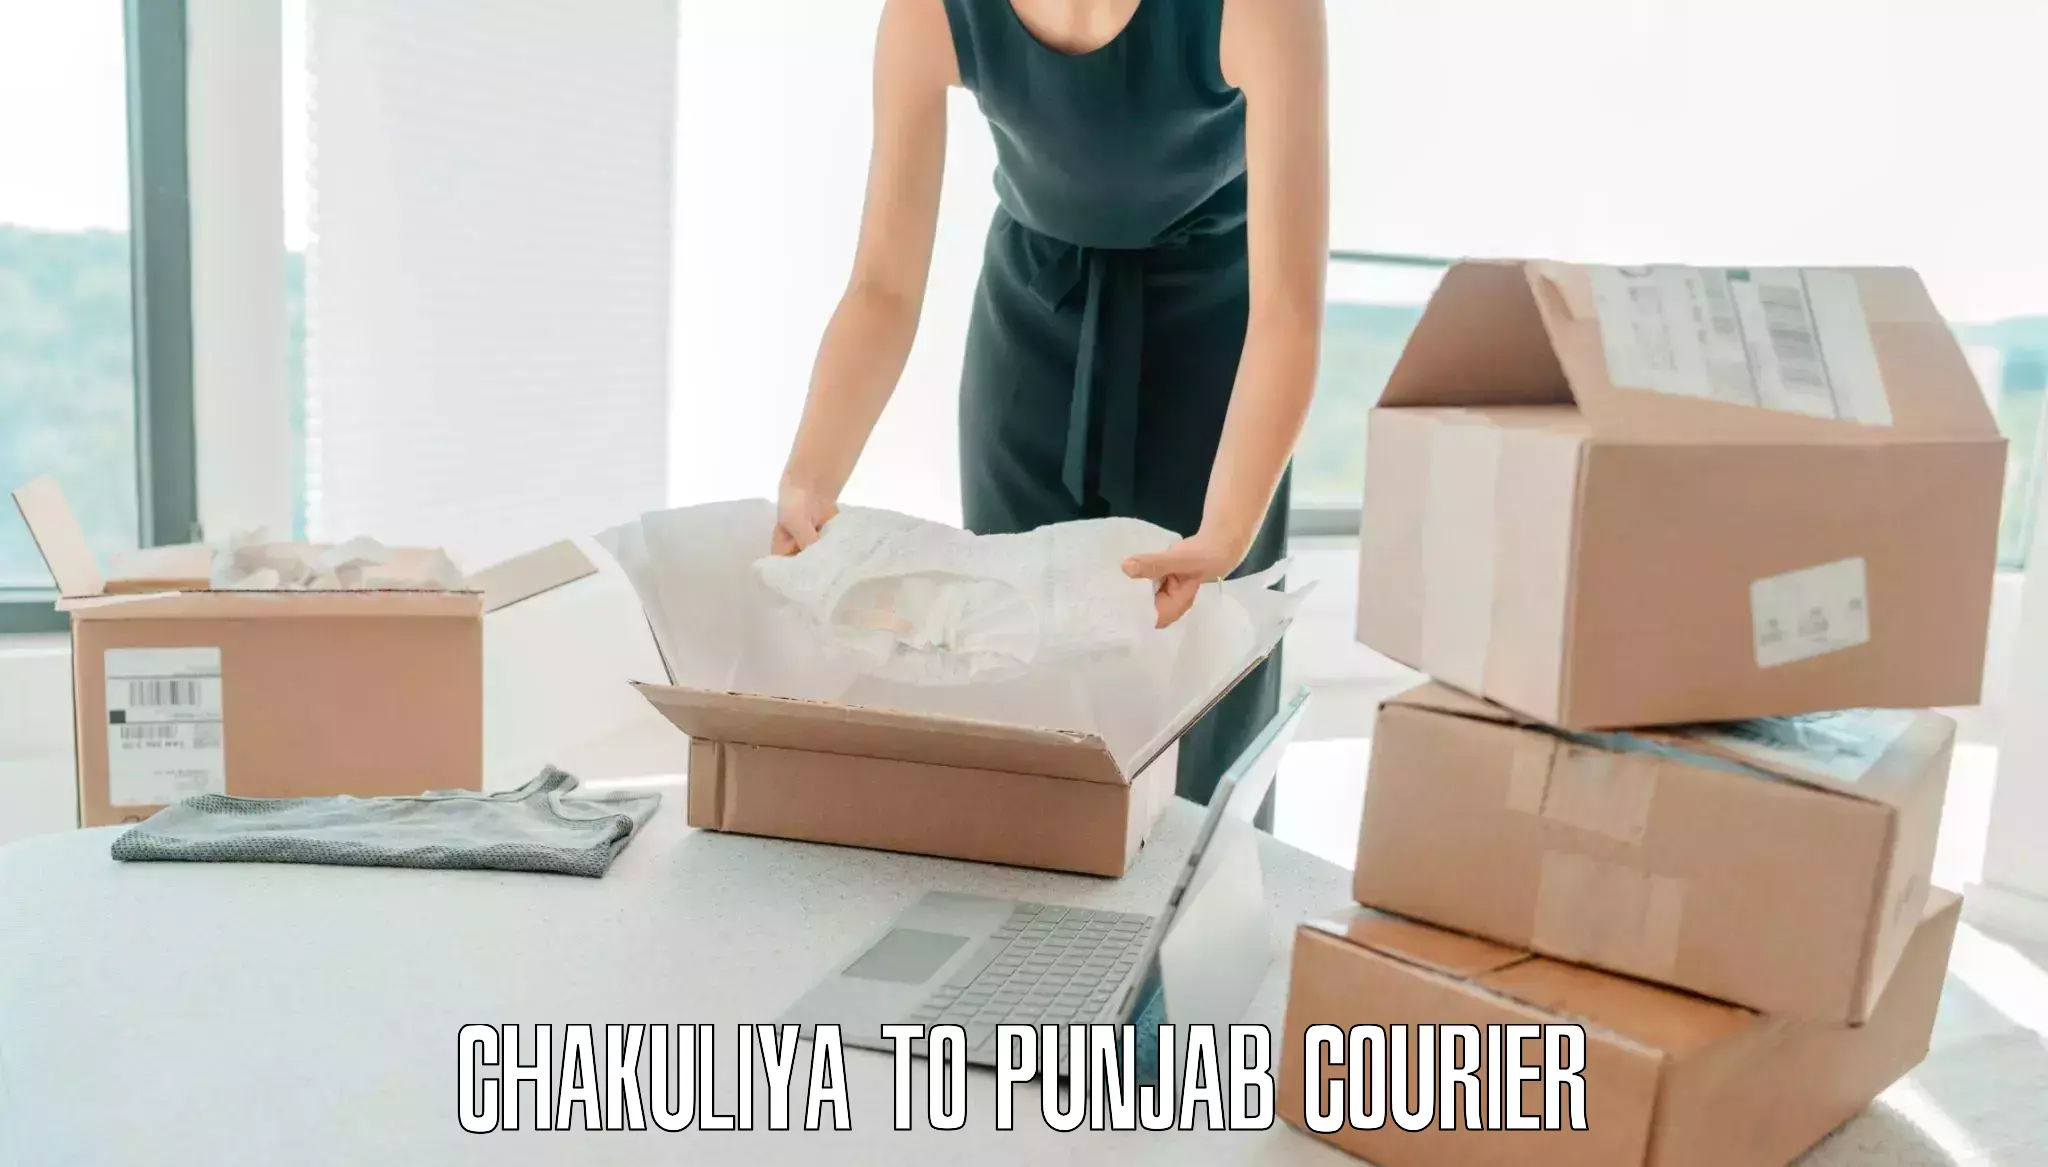 Baggage courier operations Chakuliya to Talwara